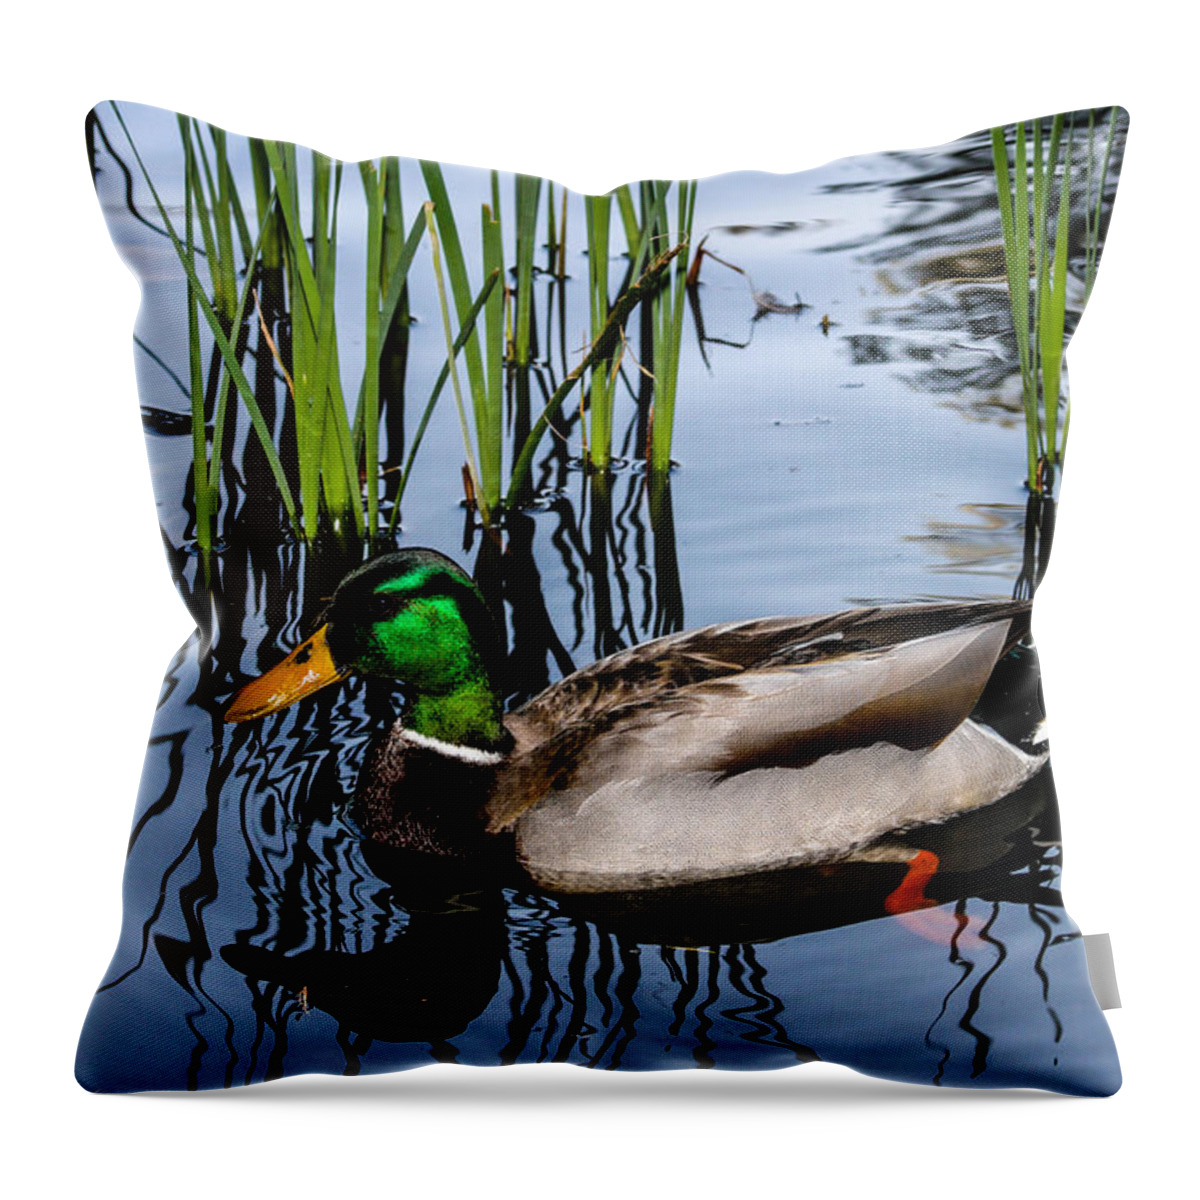 Duck Throw Pillow featuring the photograph Mallard Reflections by Robert Hebert